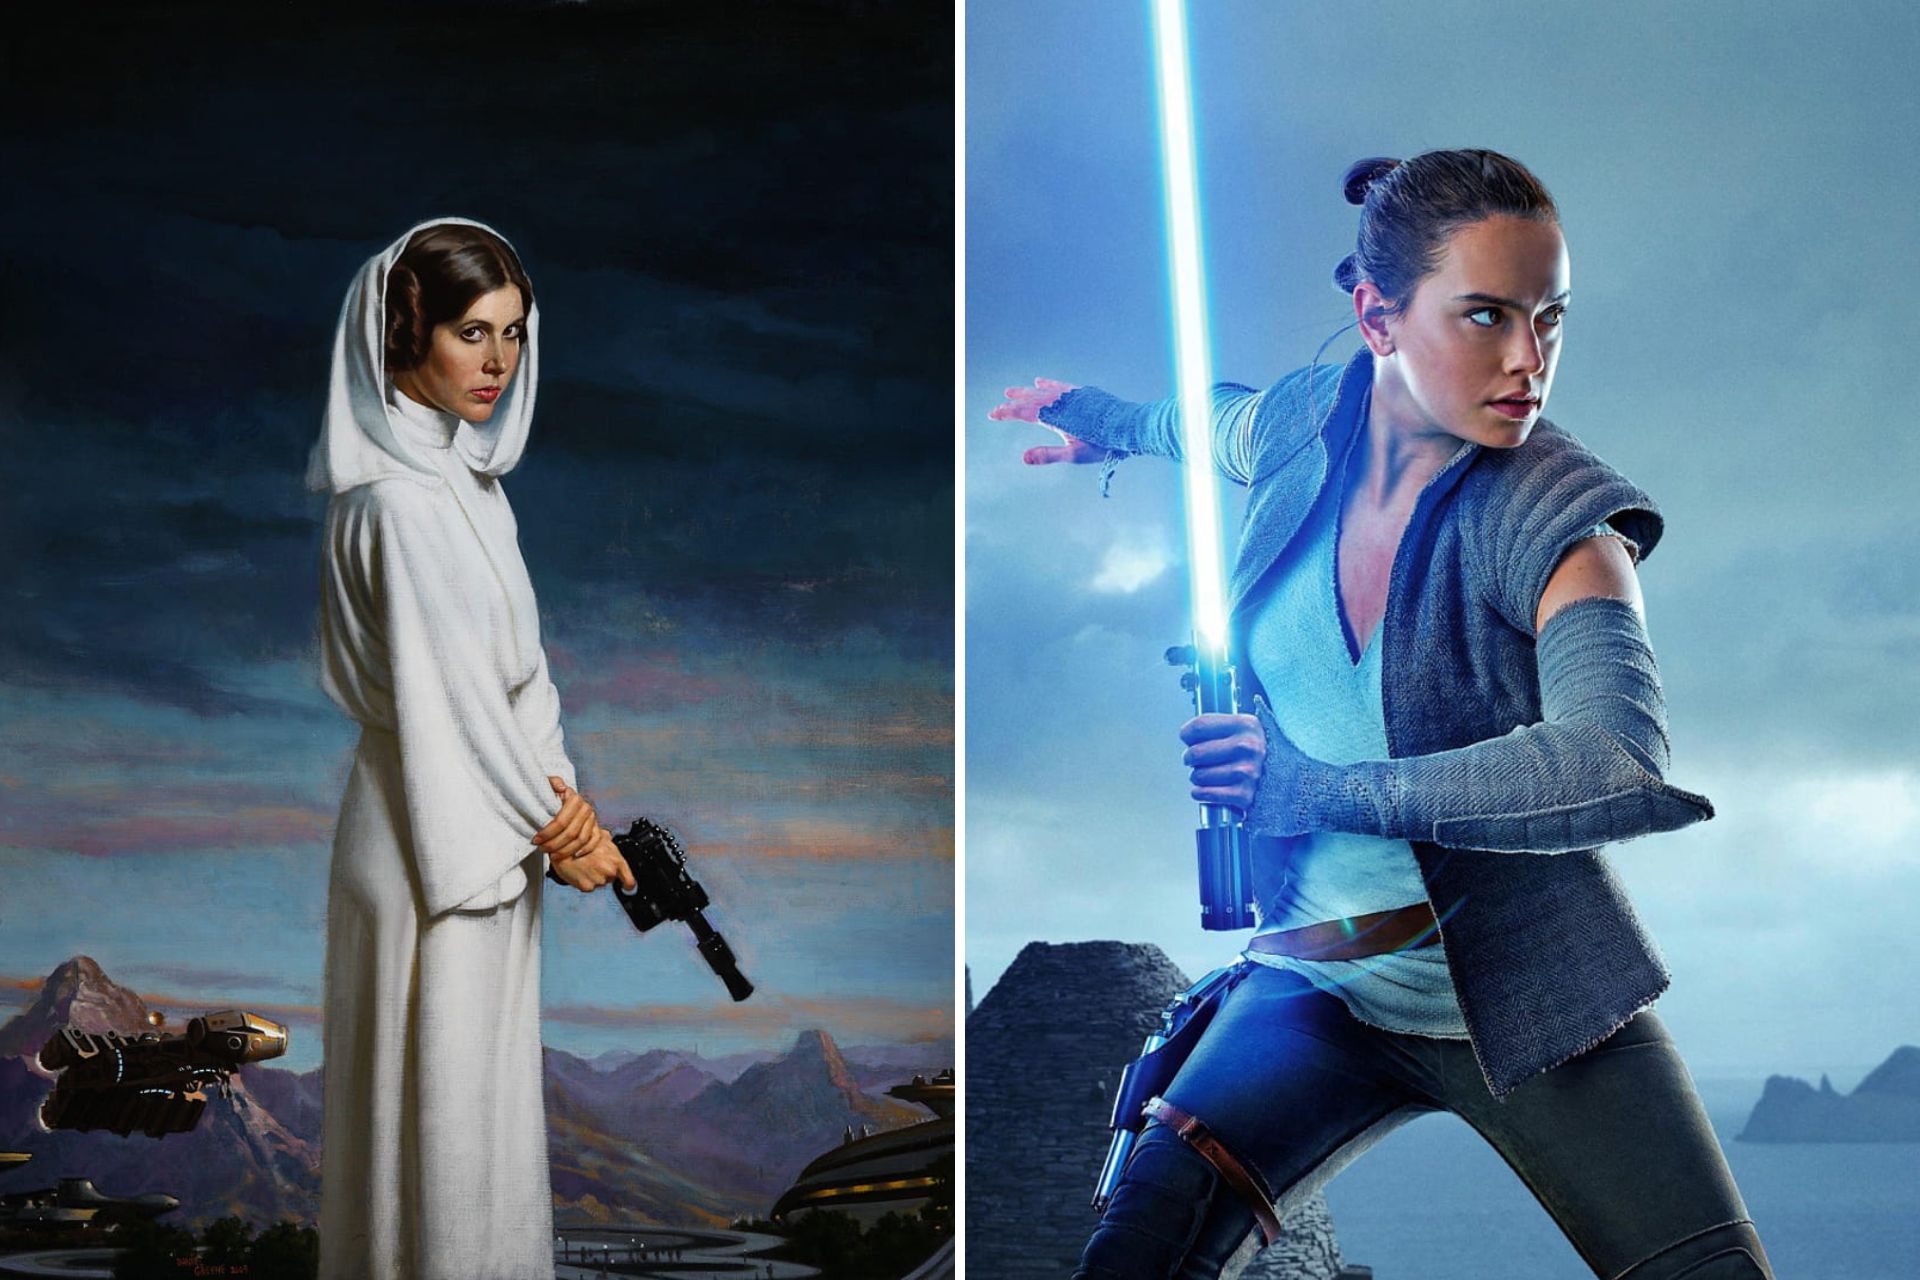 Le rôle des femmes dans la saga Star Wars